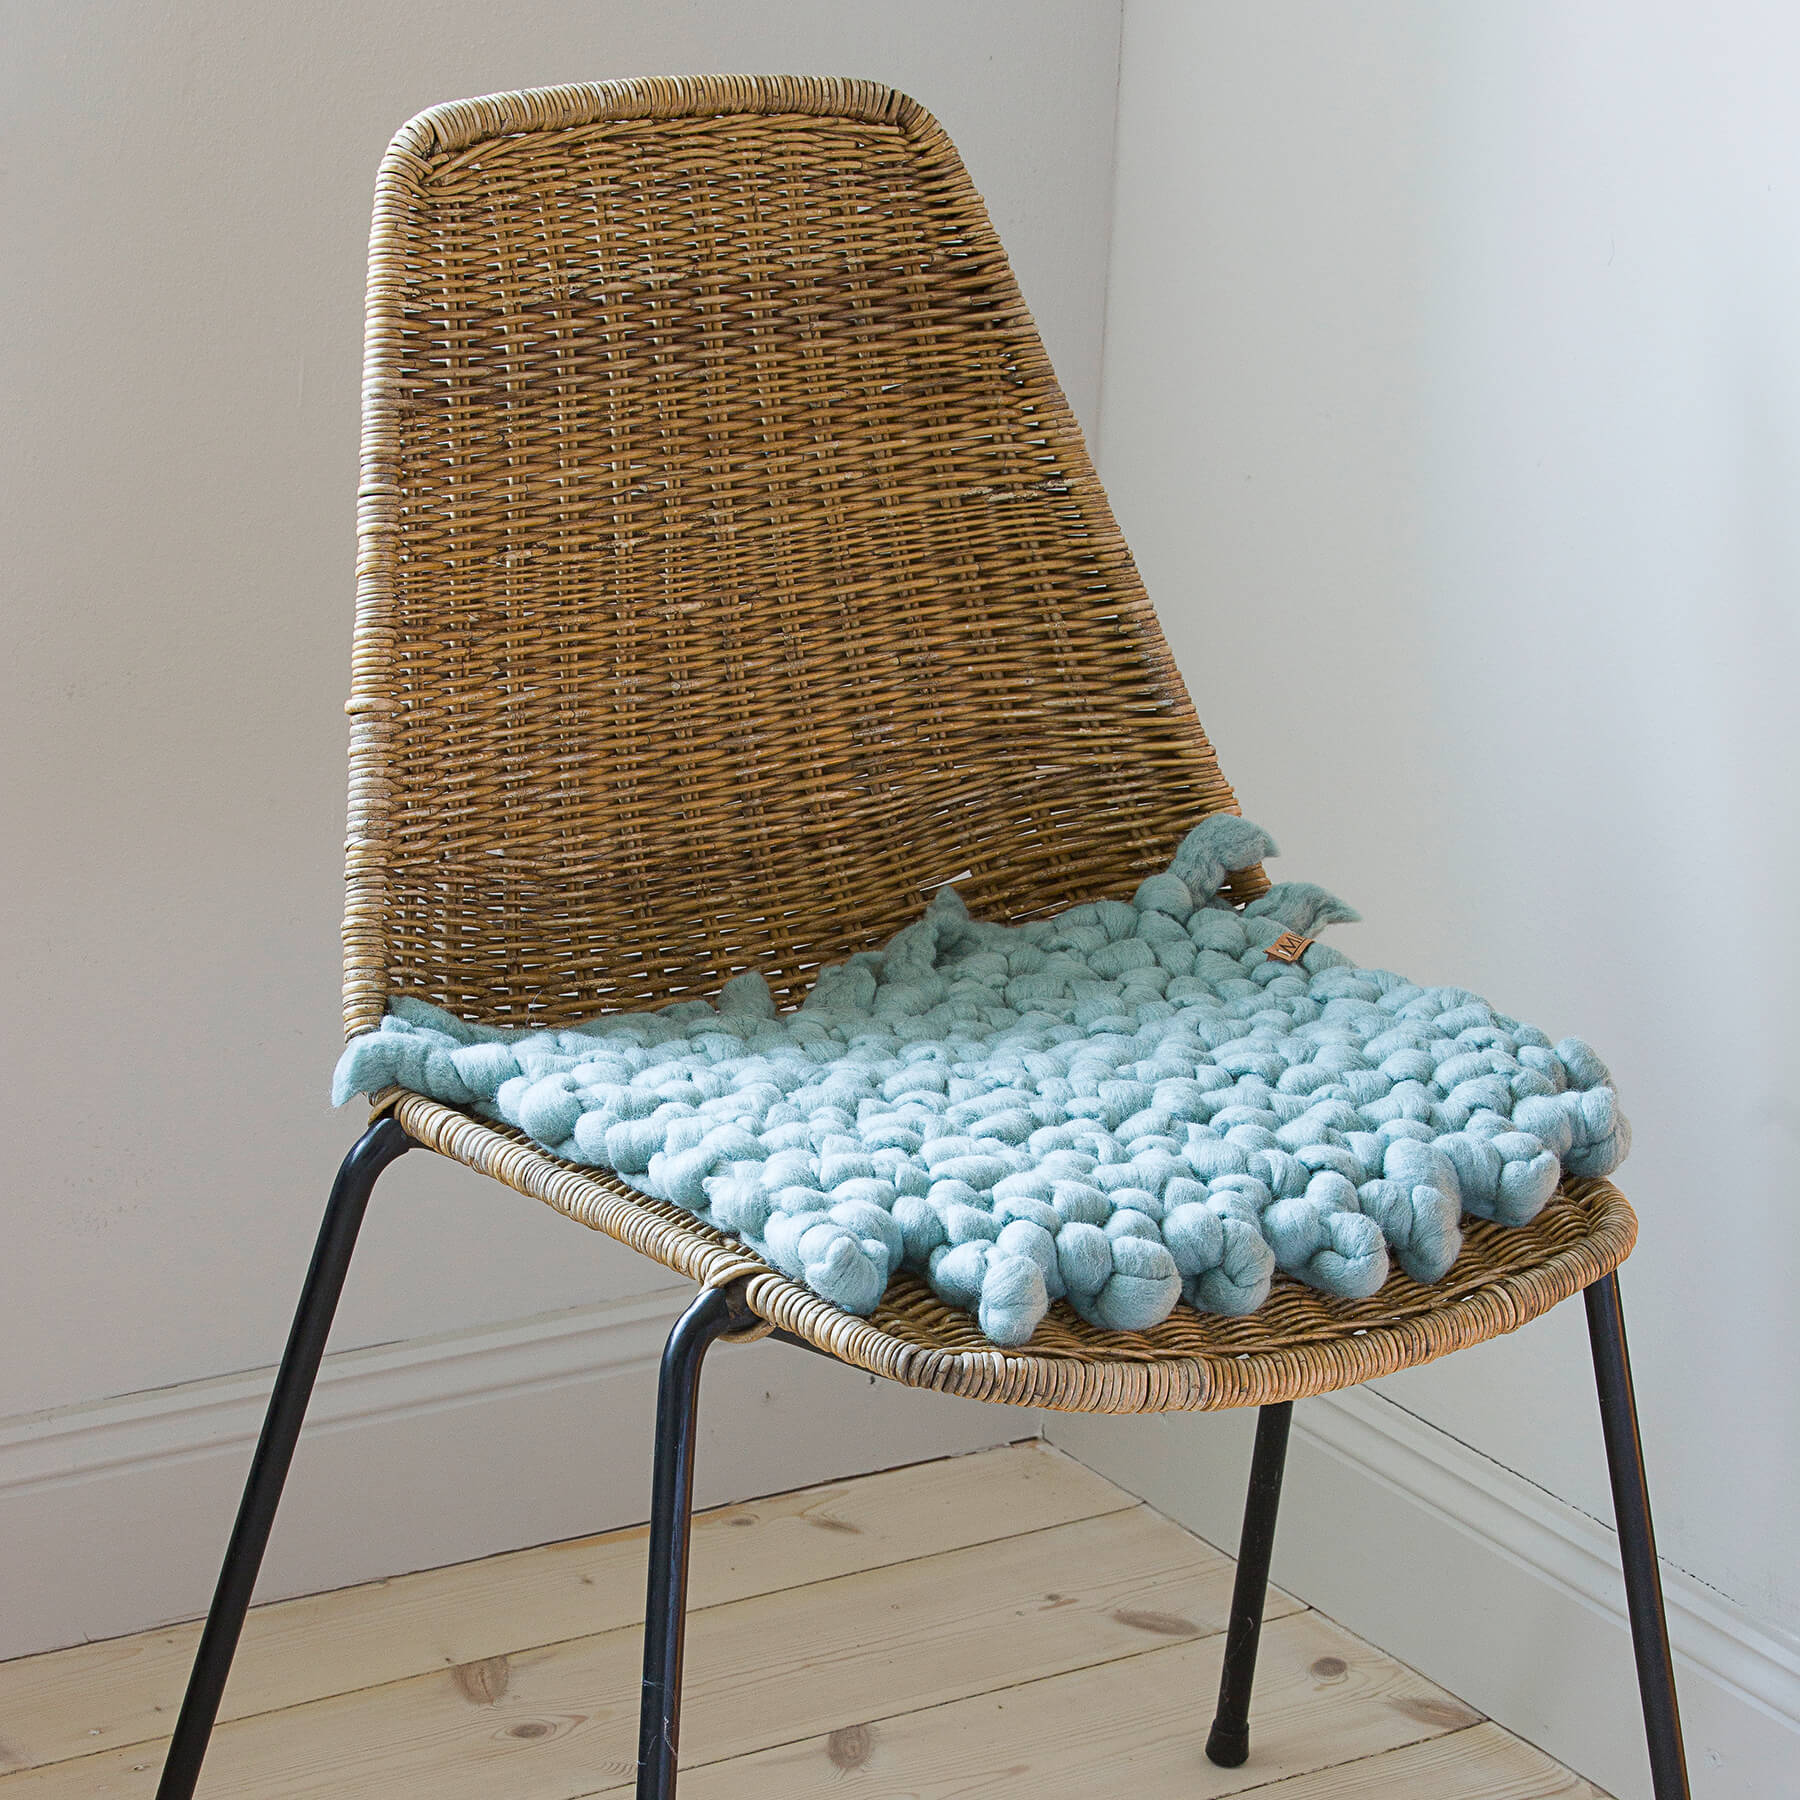 Wool fair trade chair cushion 35 cm in diameter